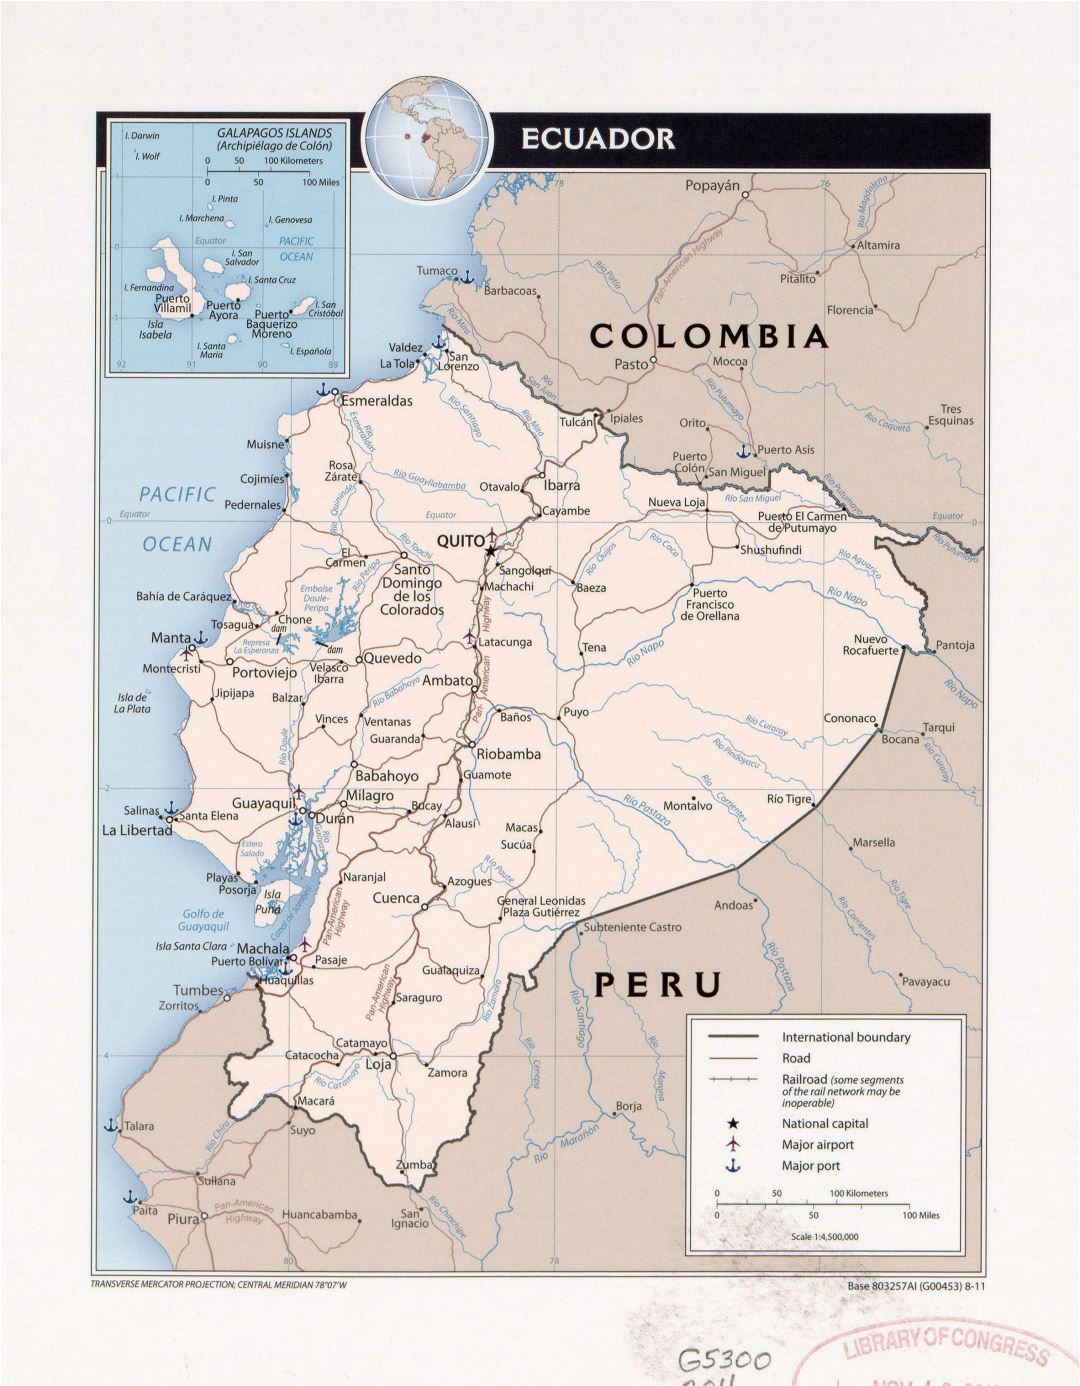 Большая детальная политическая карта Эквадора с пометками крупных городов, дорог, железных дорог, аэропортов и морских портов - 2011